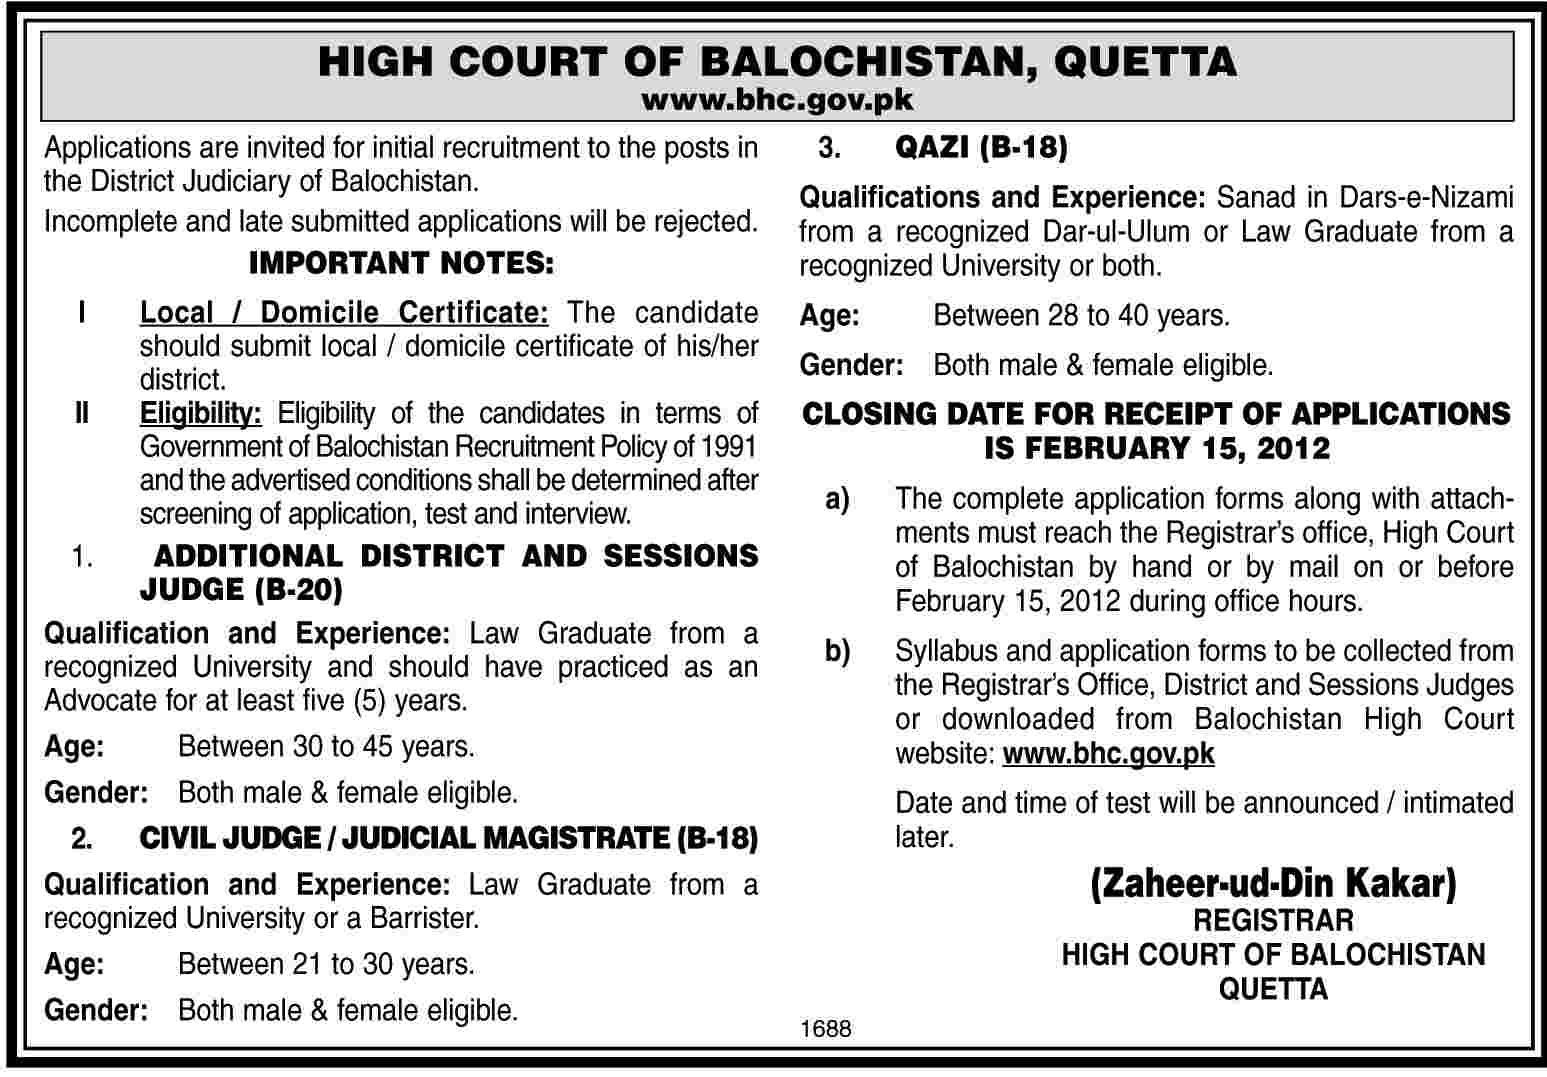 High Court of Balochistan, Quetta Jobs Opportunities